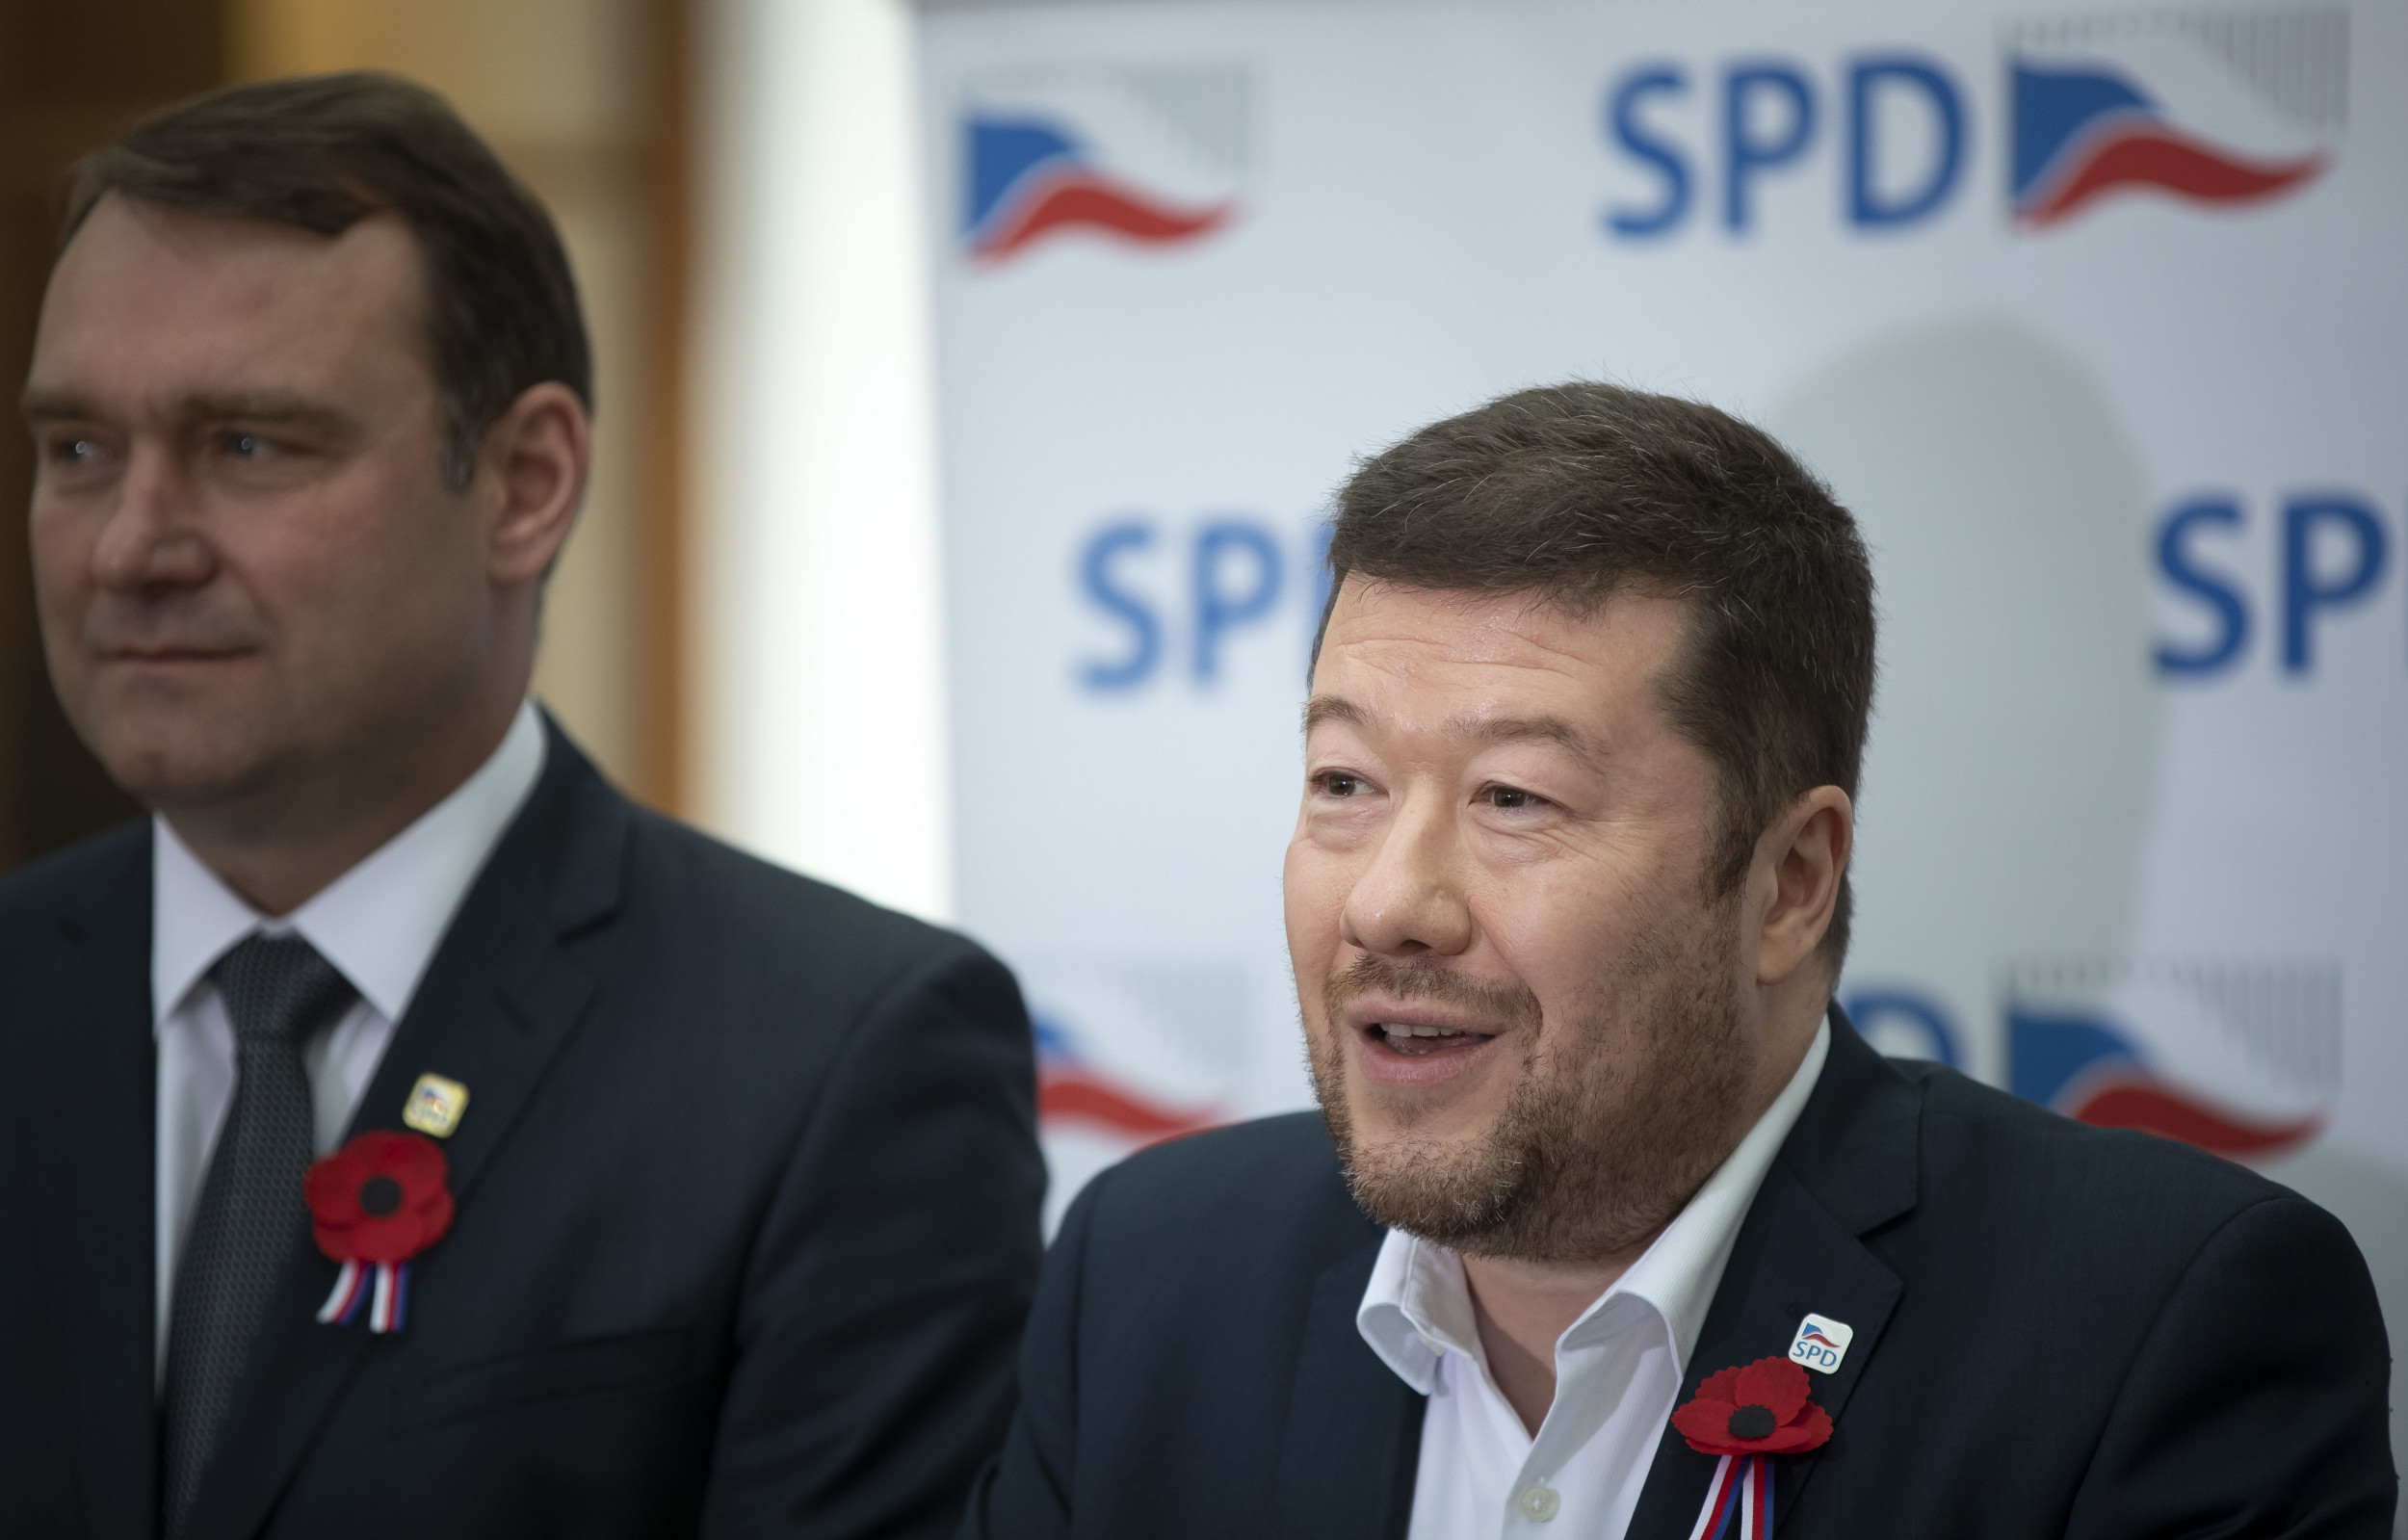 SPD v kampani platila dezinformátorům i XTV, u několika milionů jsou otazníky